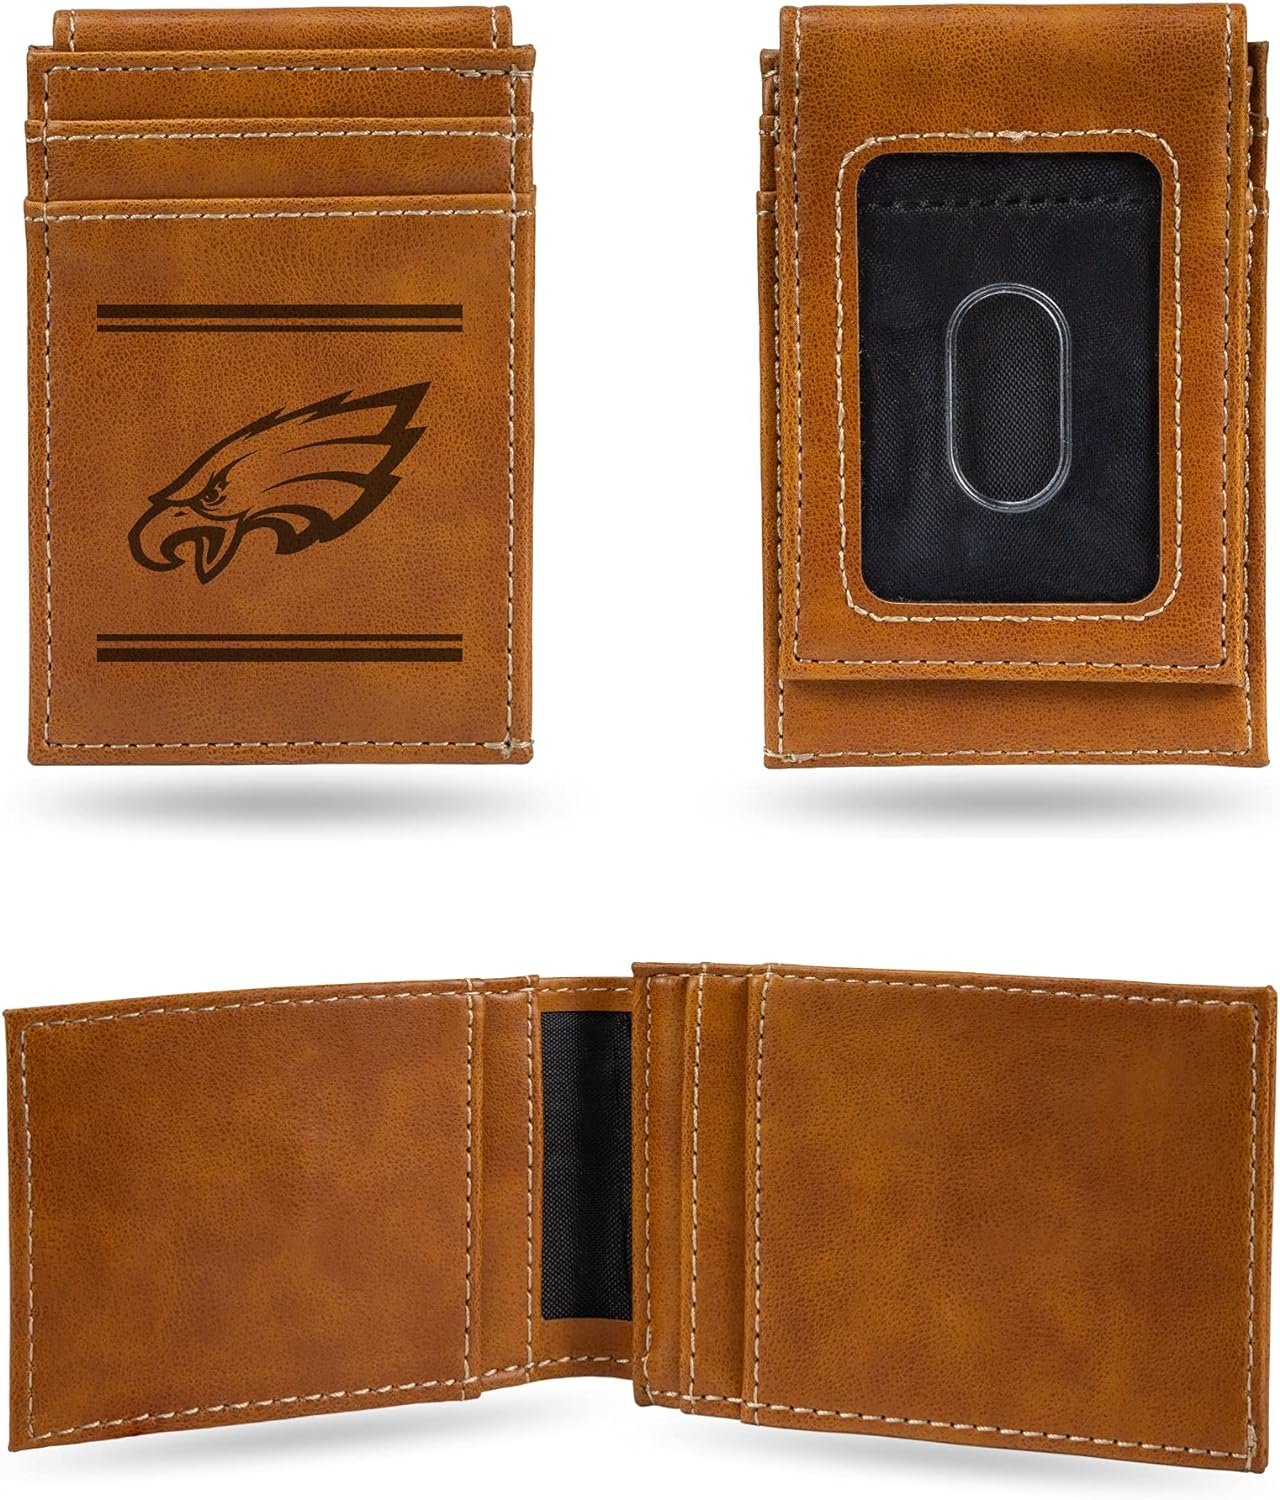 Philadelphia Eagles Premium Brown Leather Wallet, Front Pocket Magnetic Money Clip, Laser Engraved, Vegan